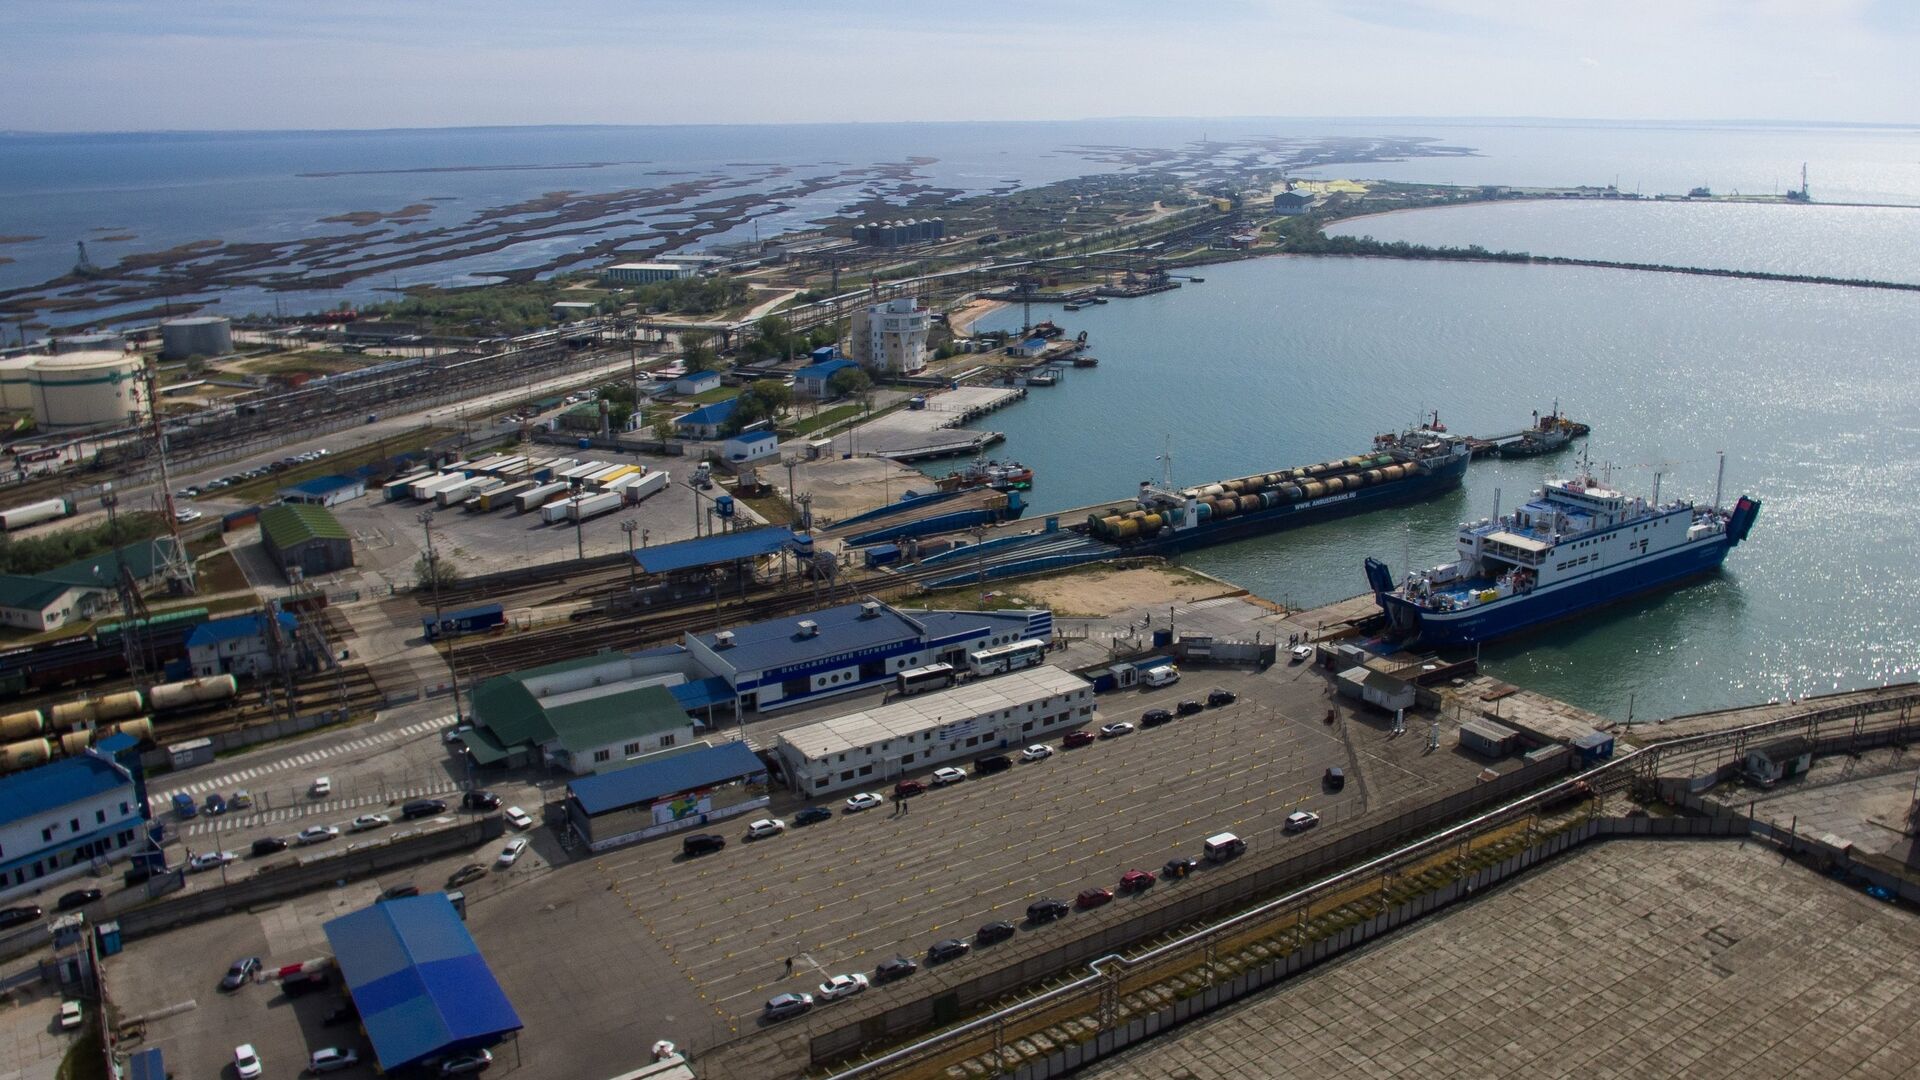 Опубликованы переговоры экипажа взорвавшегося в Азовском море танкера